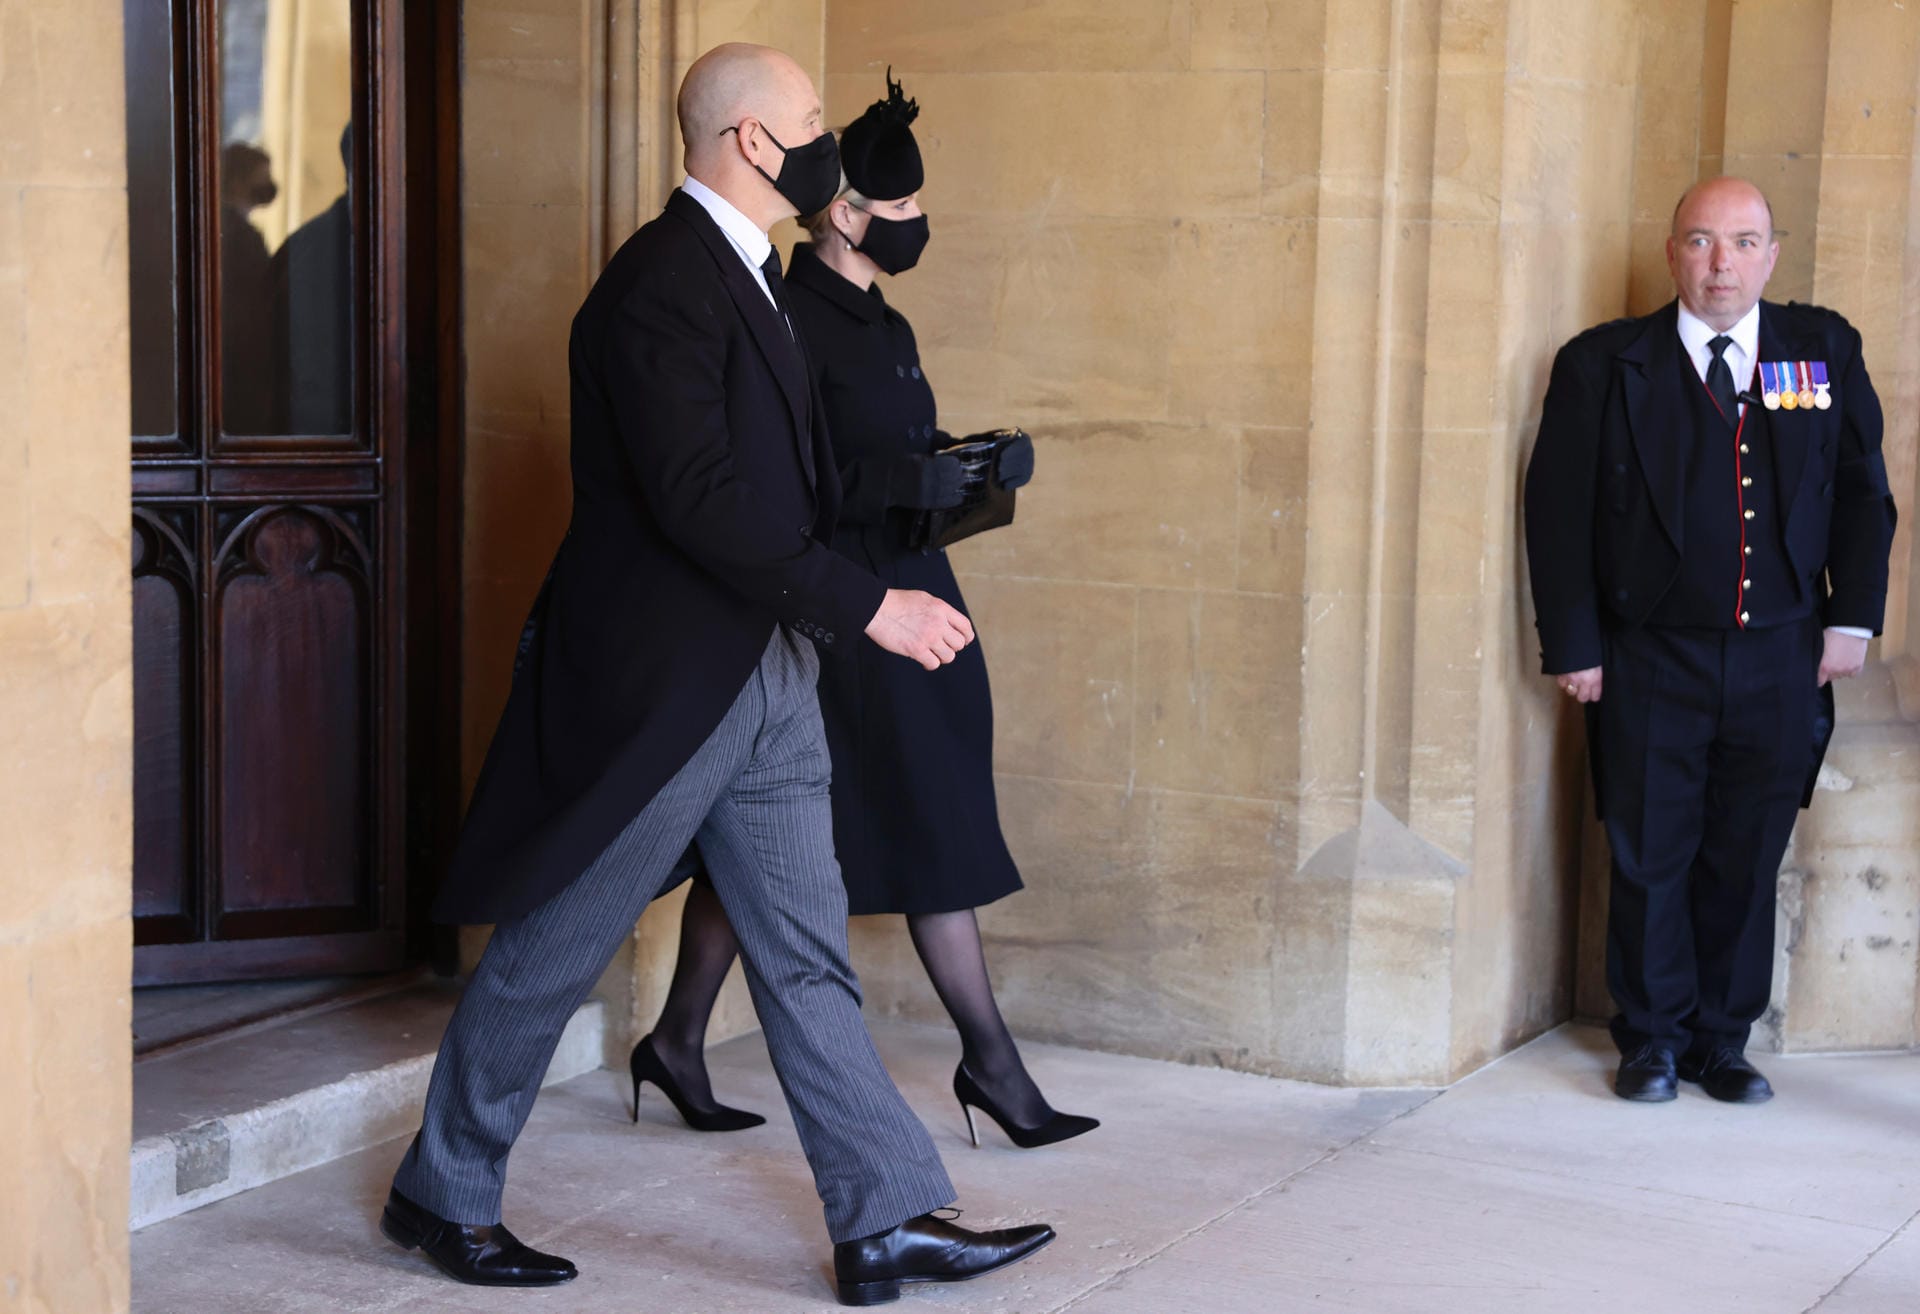 Nach der 50-minütugen Trauerfeier verlässt die Royal Family die Kapelle. Hier zu sehen: Zara und Mike Tindall.